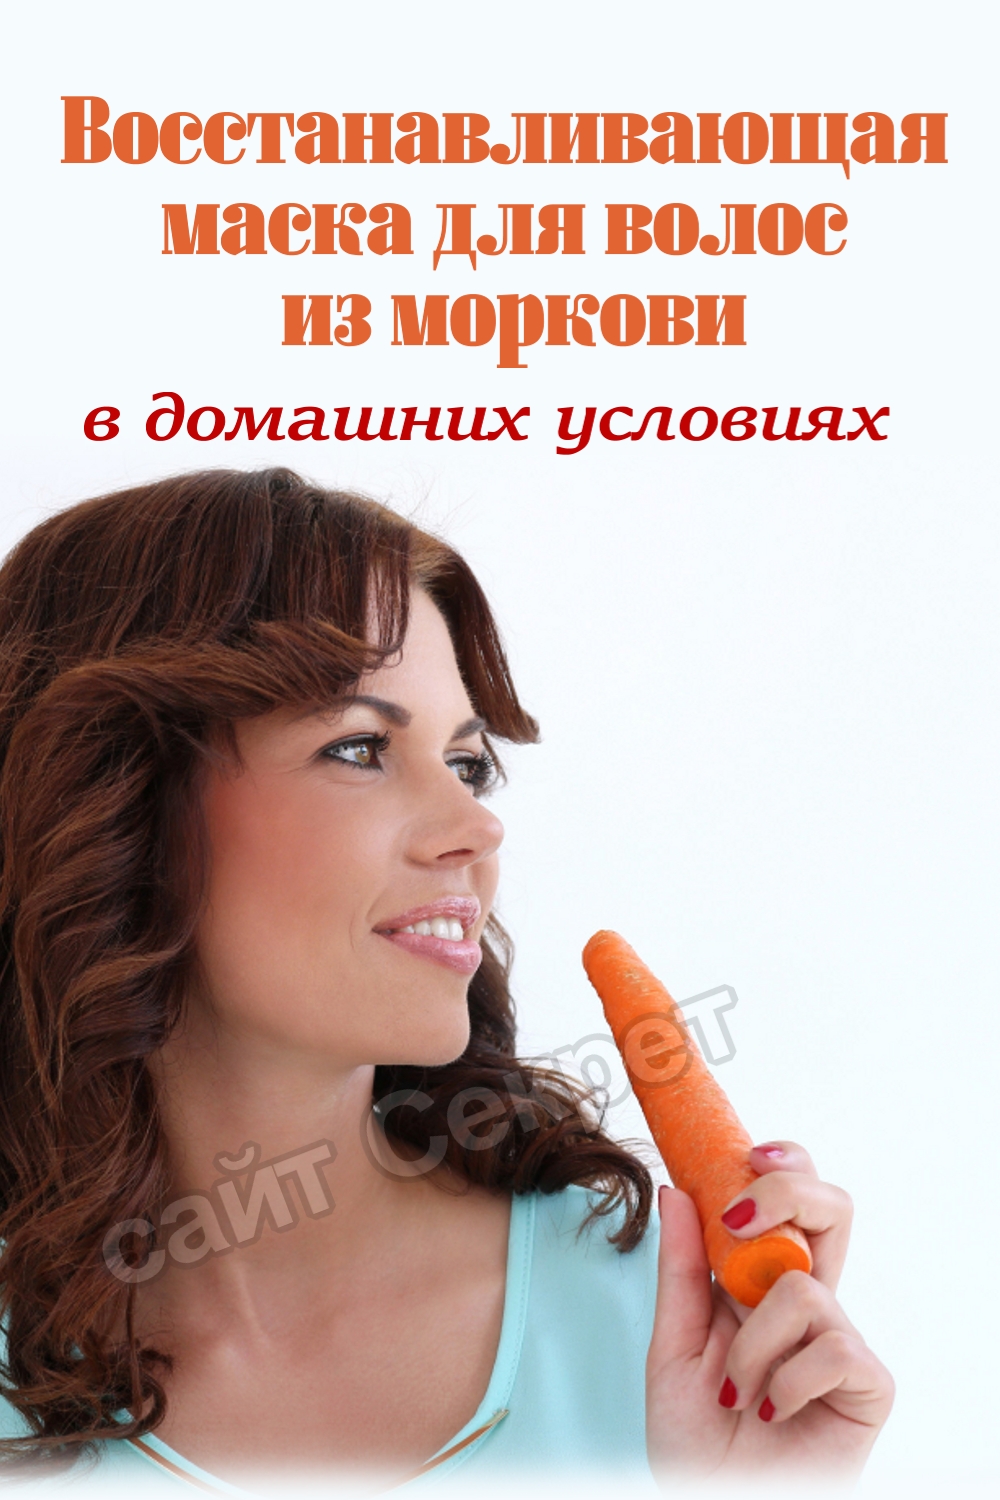 Восстанавливающая маска для волос из моркови 